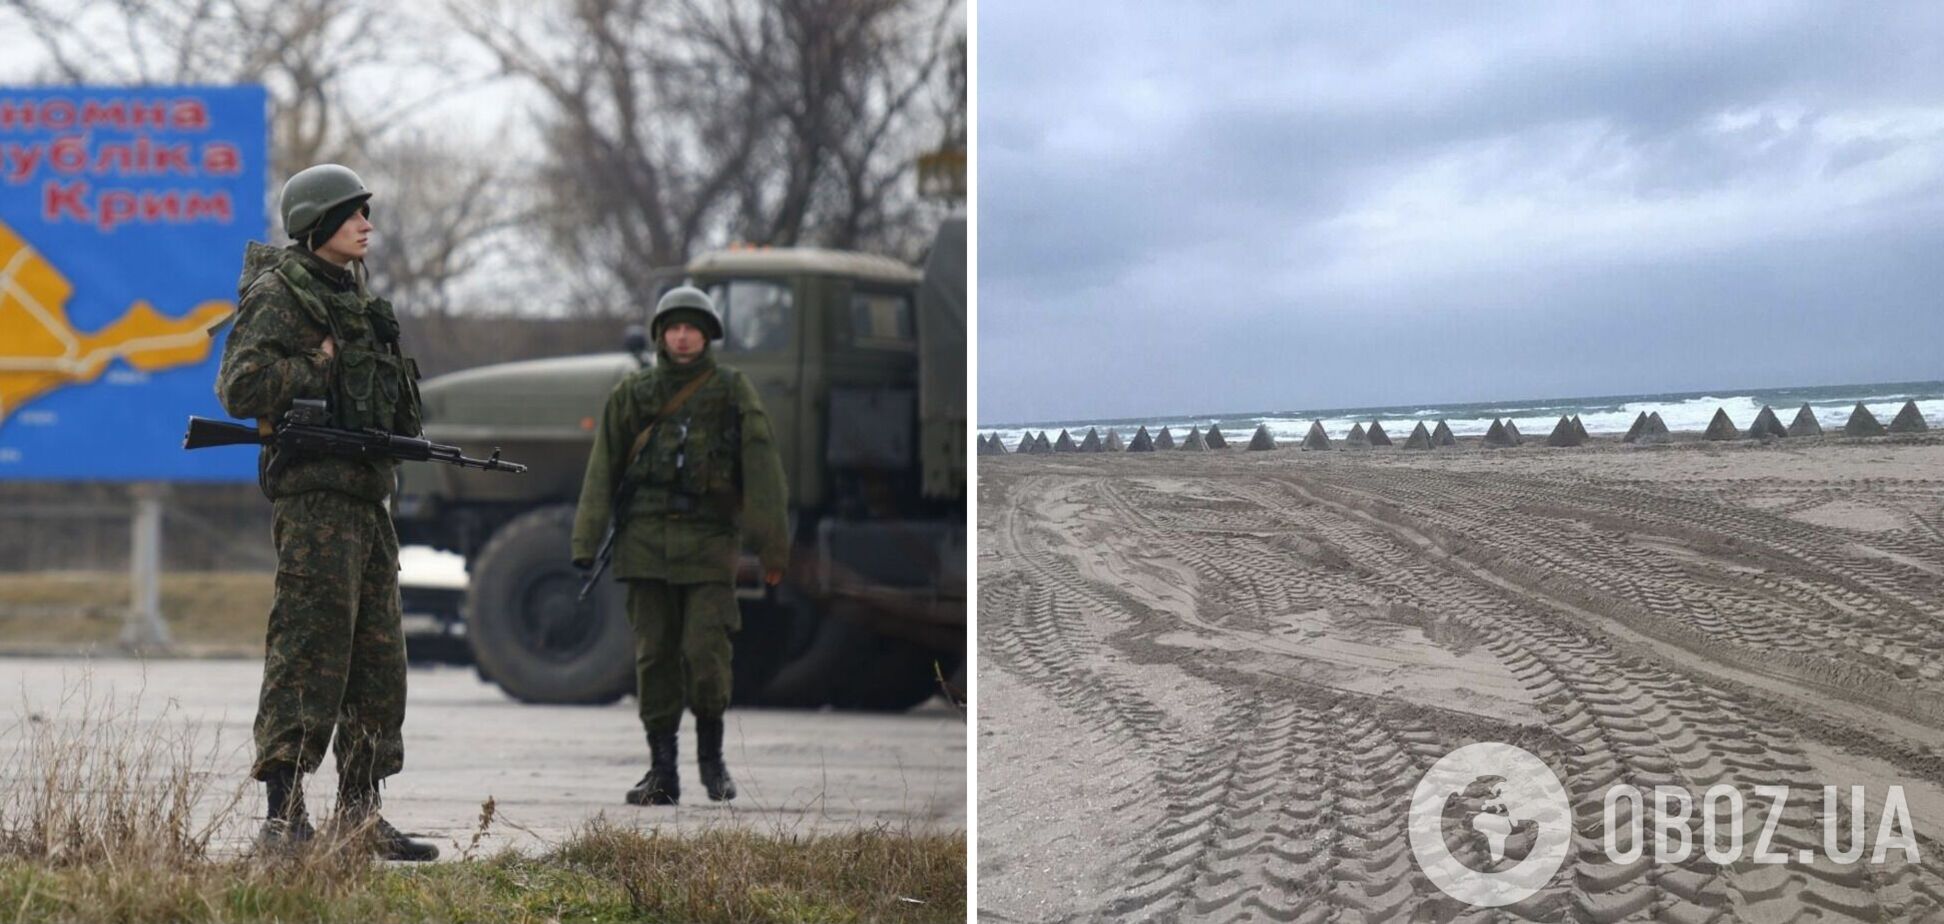 Оккупанты строят в Крыму новые укрепления, российские военные уже вывозят семьи и распродают имущество – ГУР